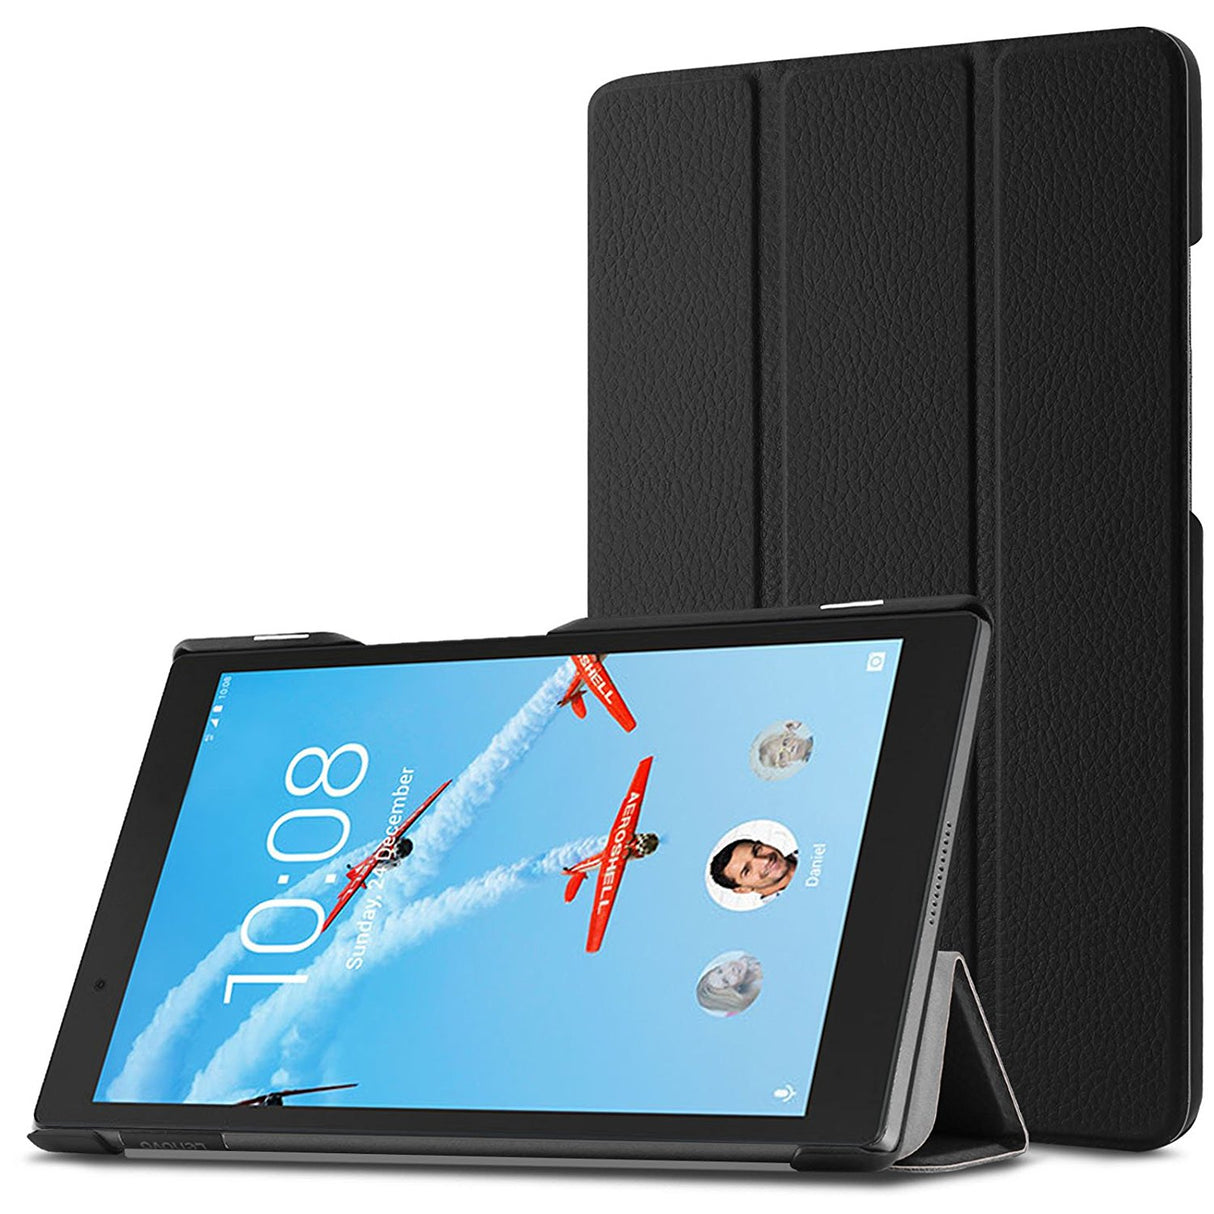 Capa 3 Dobras Smart Case Trifold Slim para Lenovo Tab 4 8 - Multi4you®